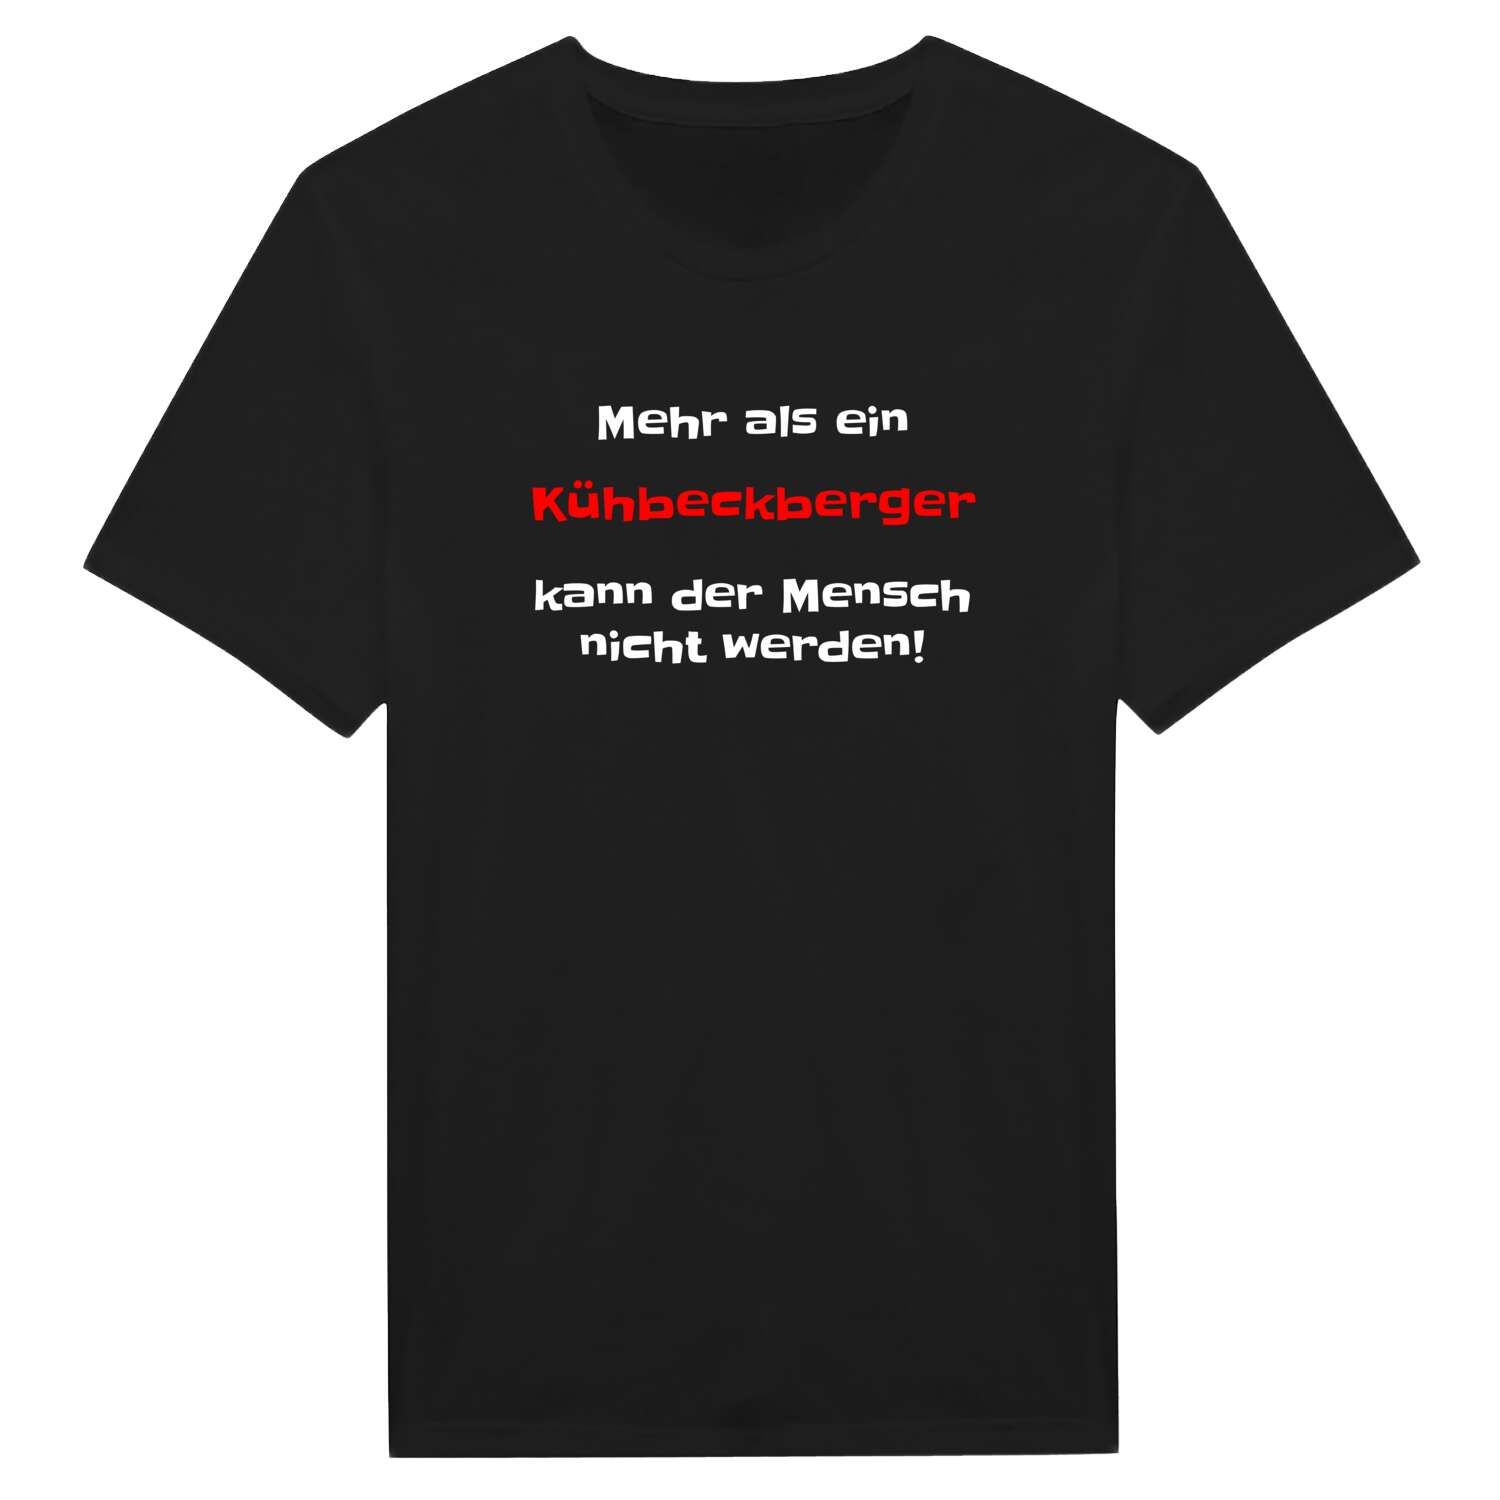 Kühbeckberg T-Shirt »Mehr als ein«